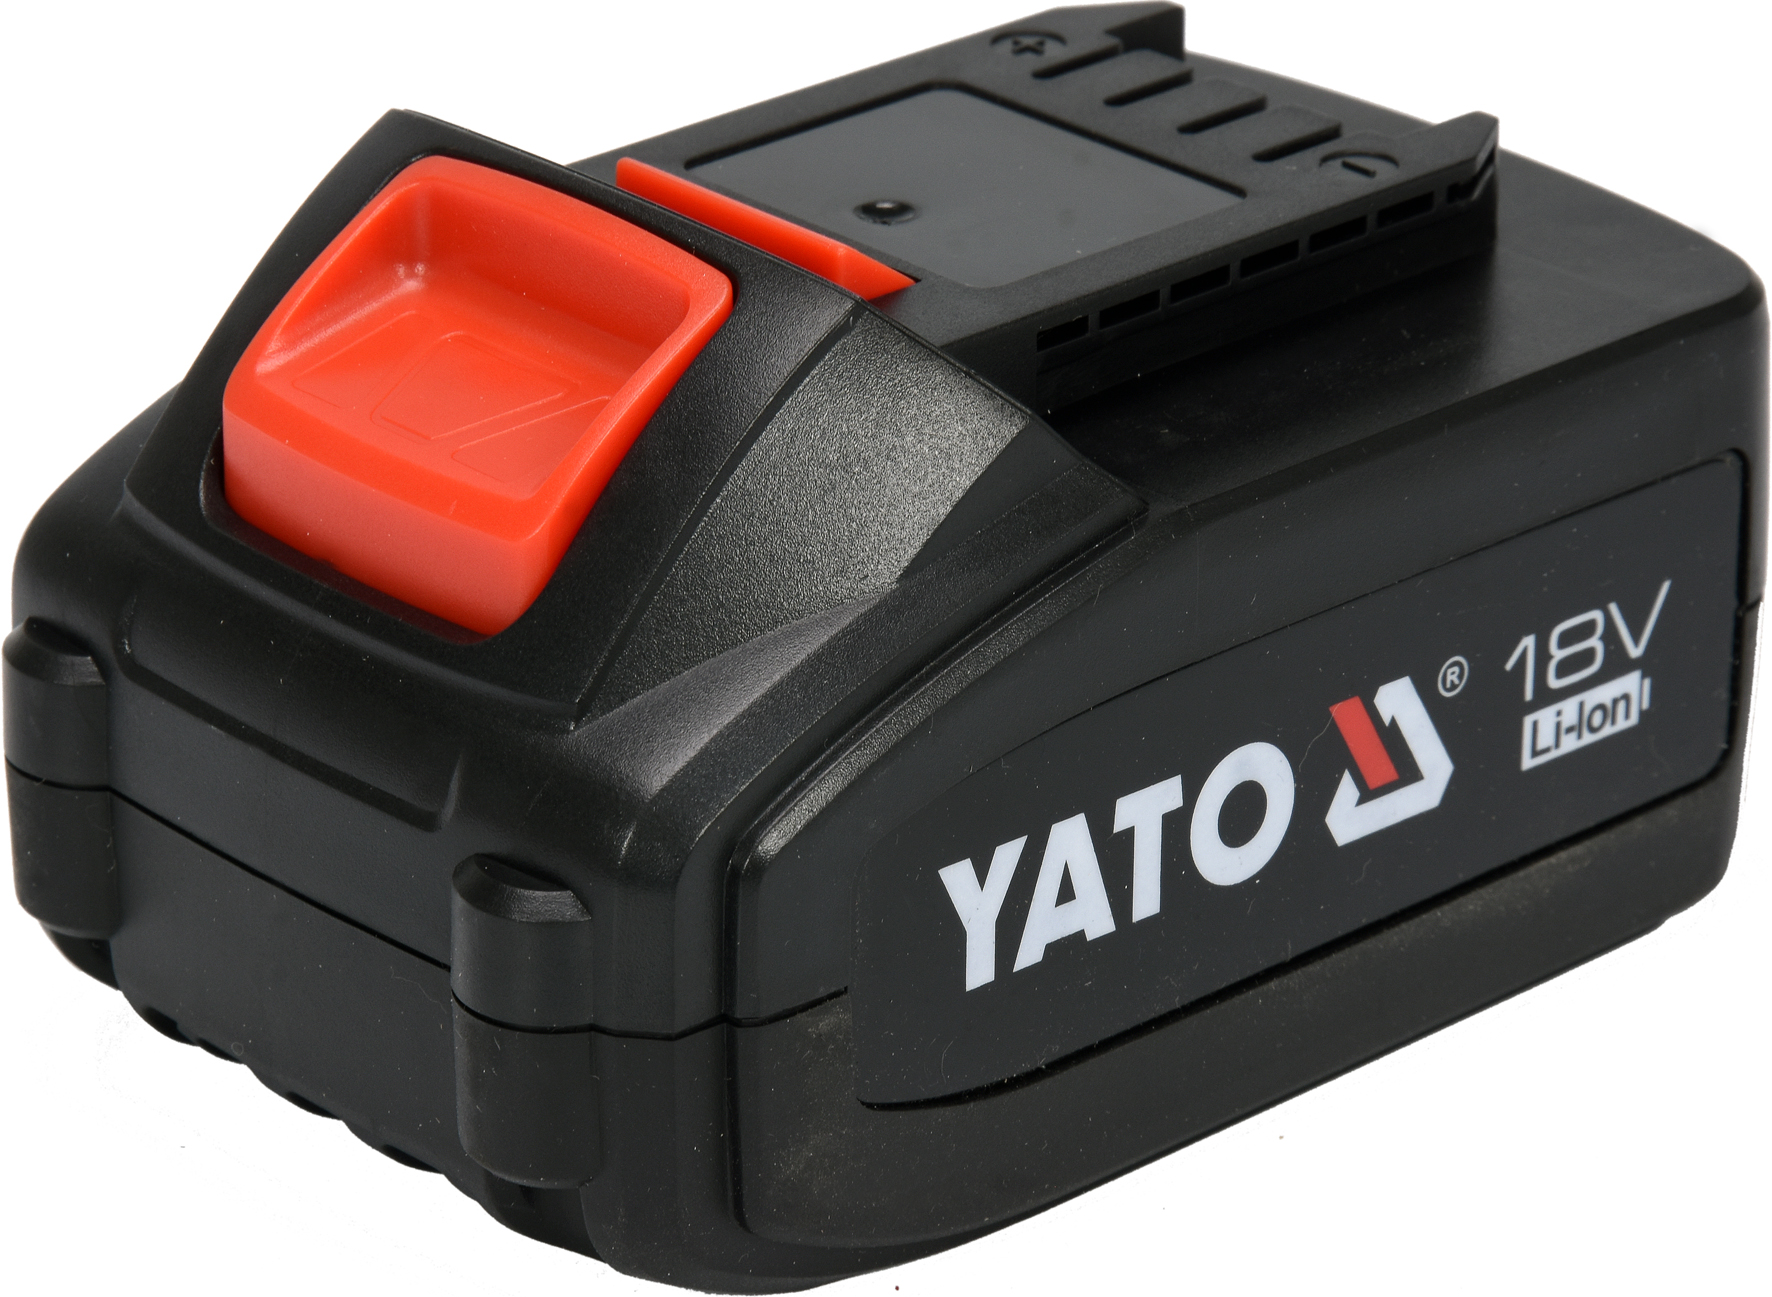 Baterie náhradní 18V Li-Ion 3,0 AH (YT-82782, YT-82788,YT-82826) Yato YT-82844a + Dárek, servis bez starostí v hodnotě 300Kč